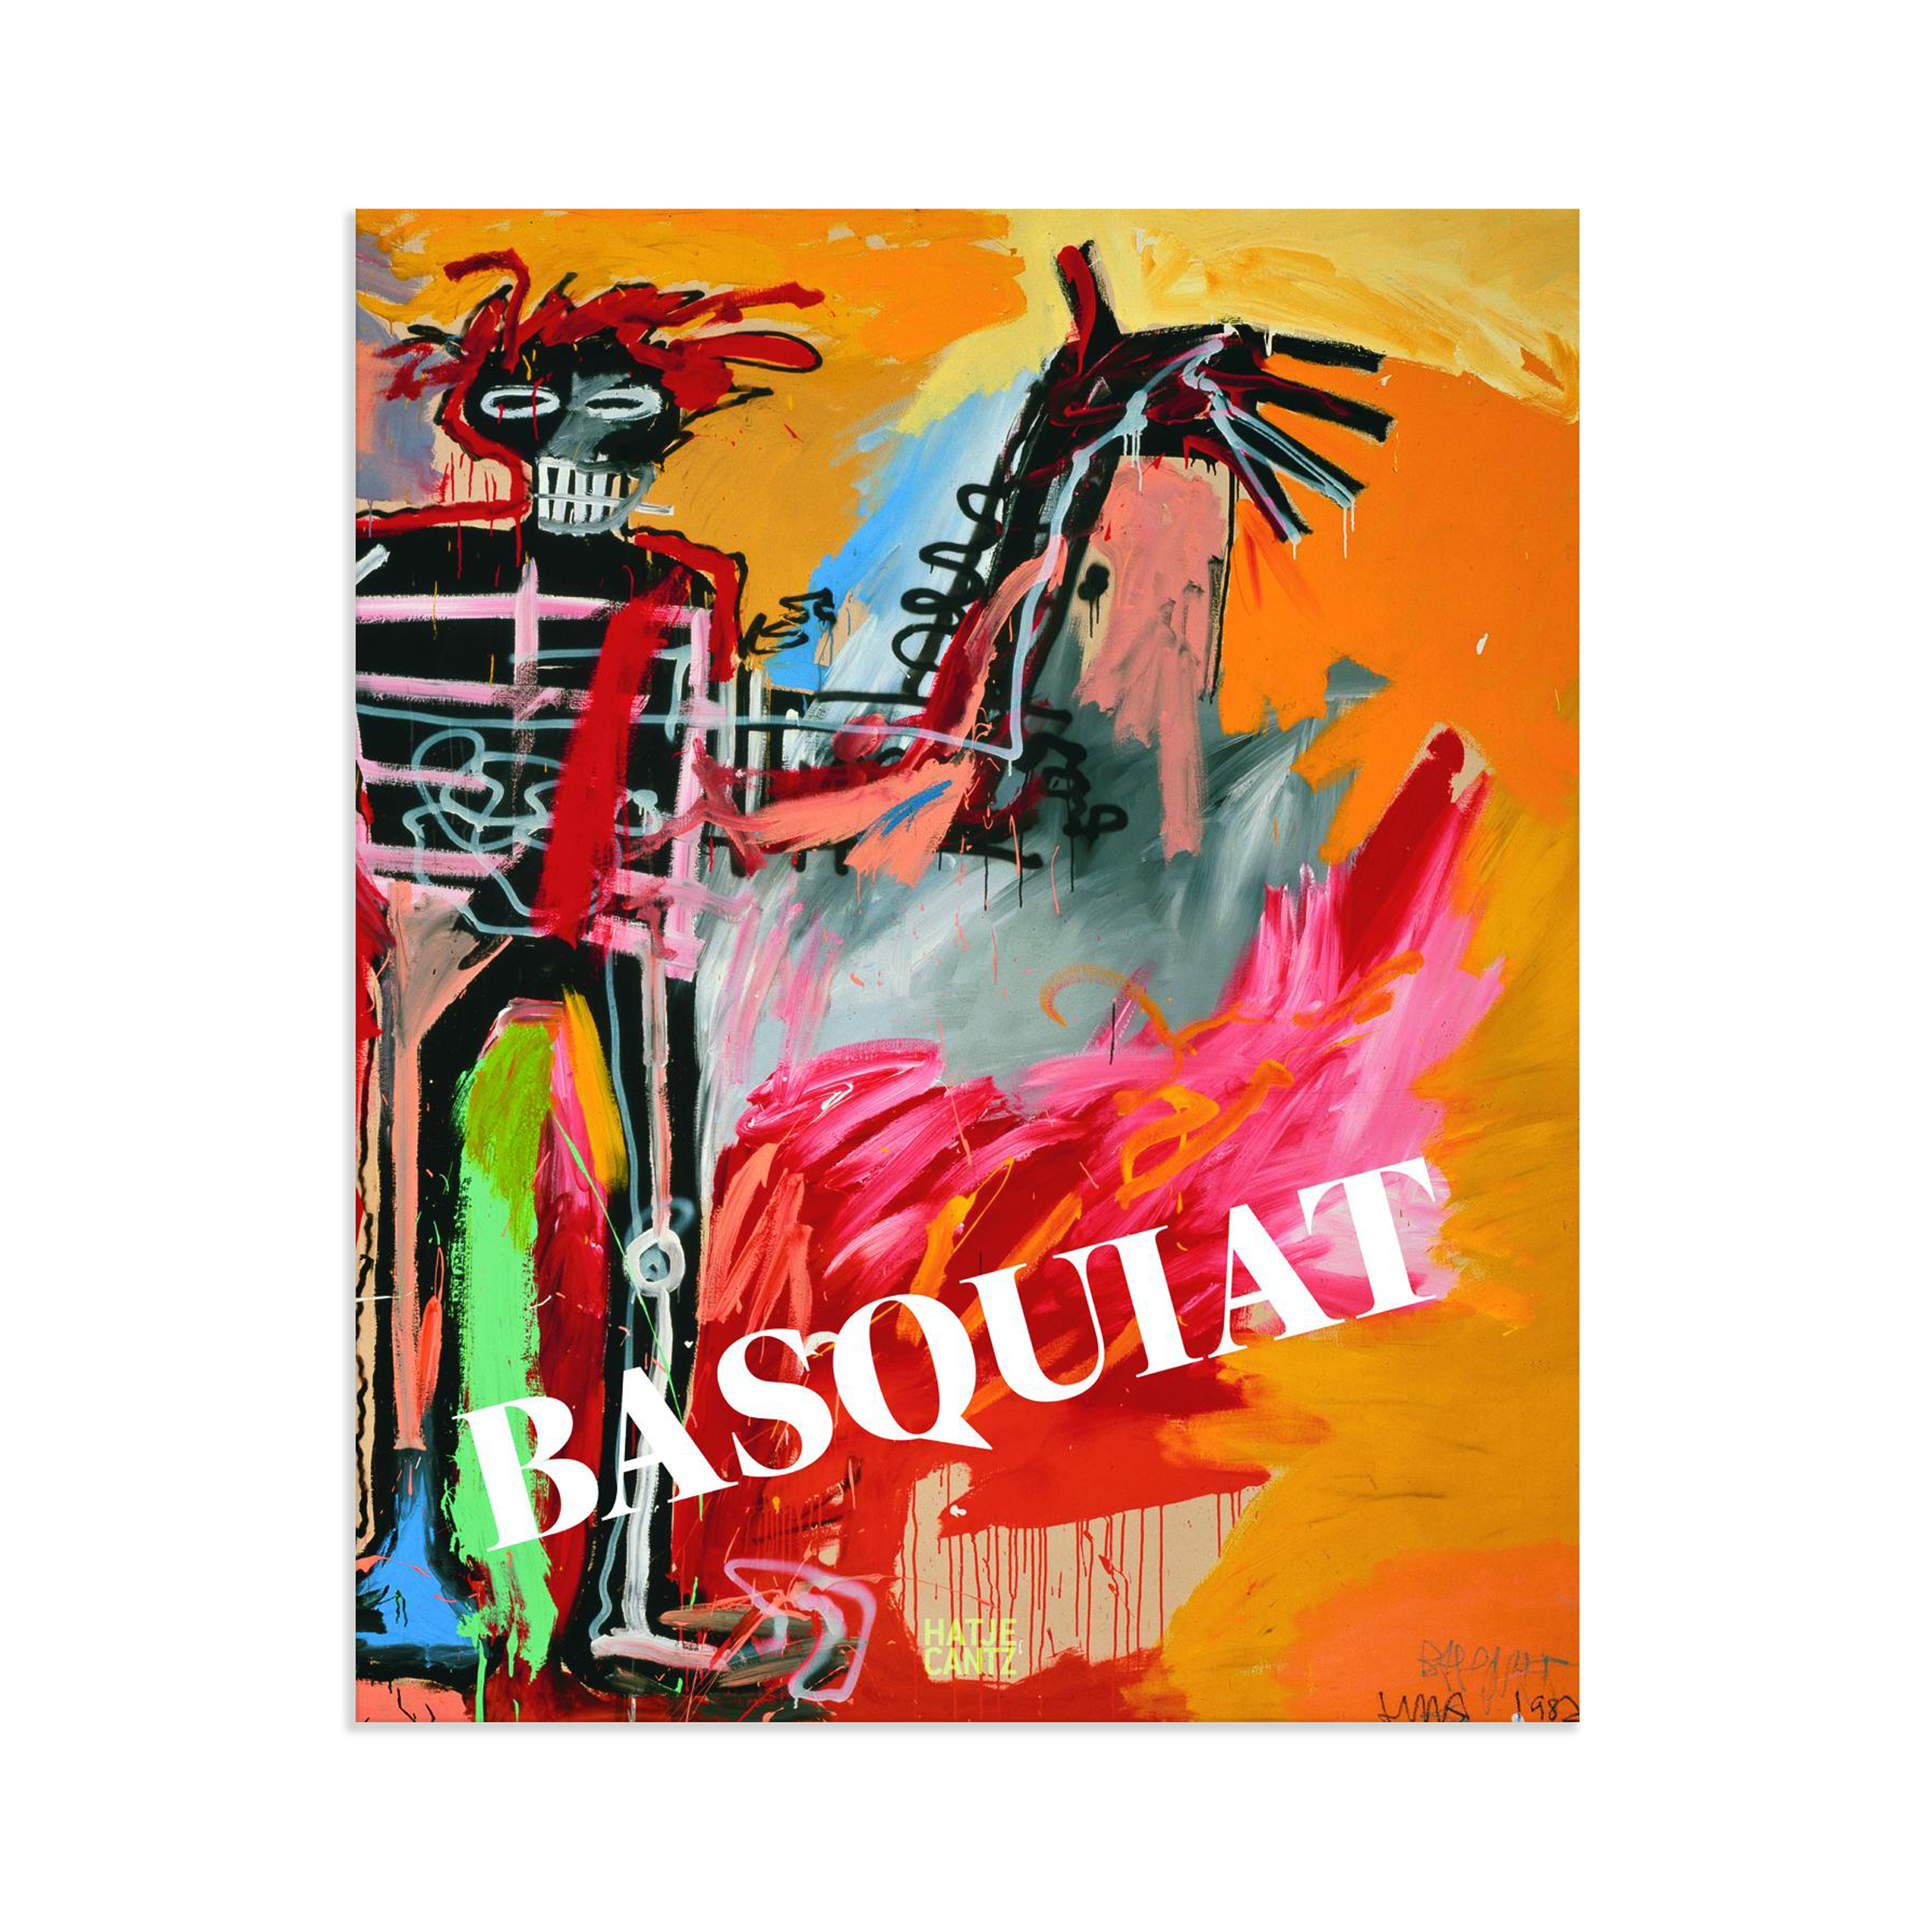 Basquiat x Warhol, English